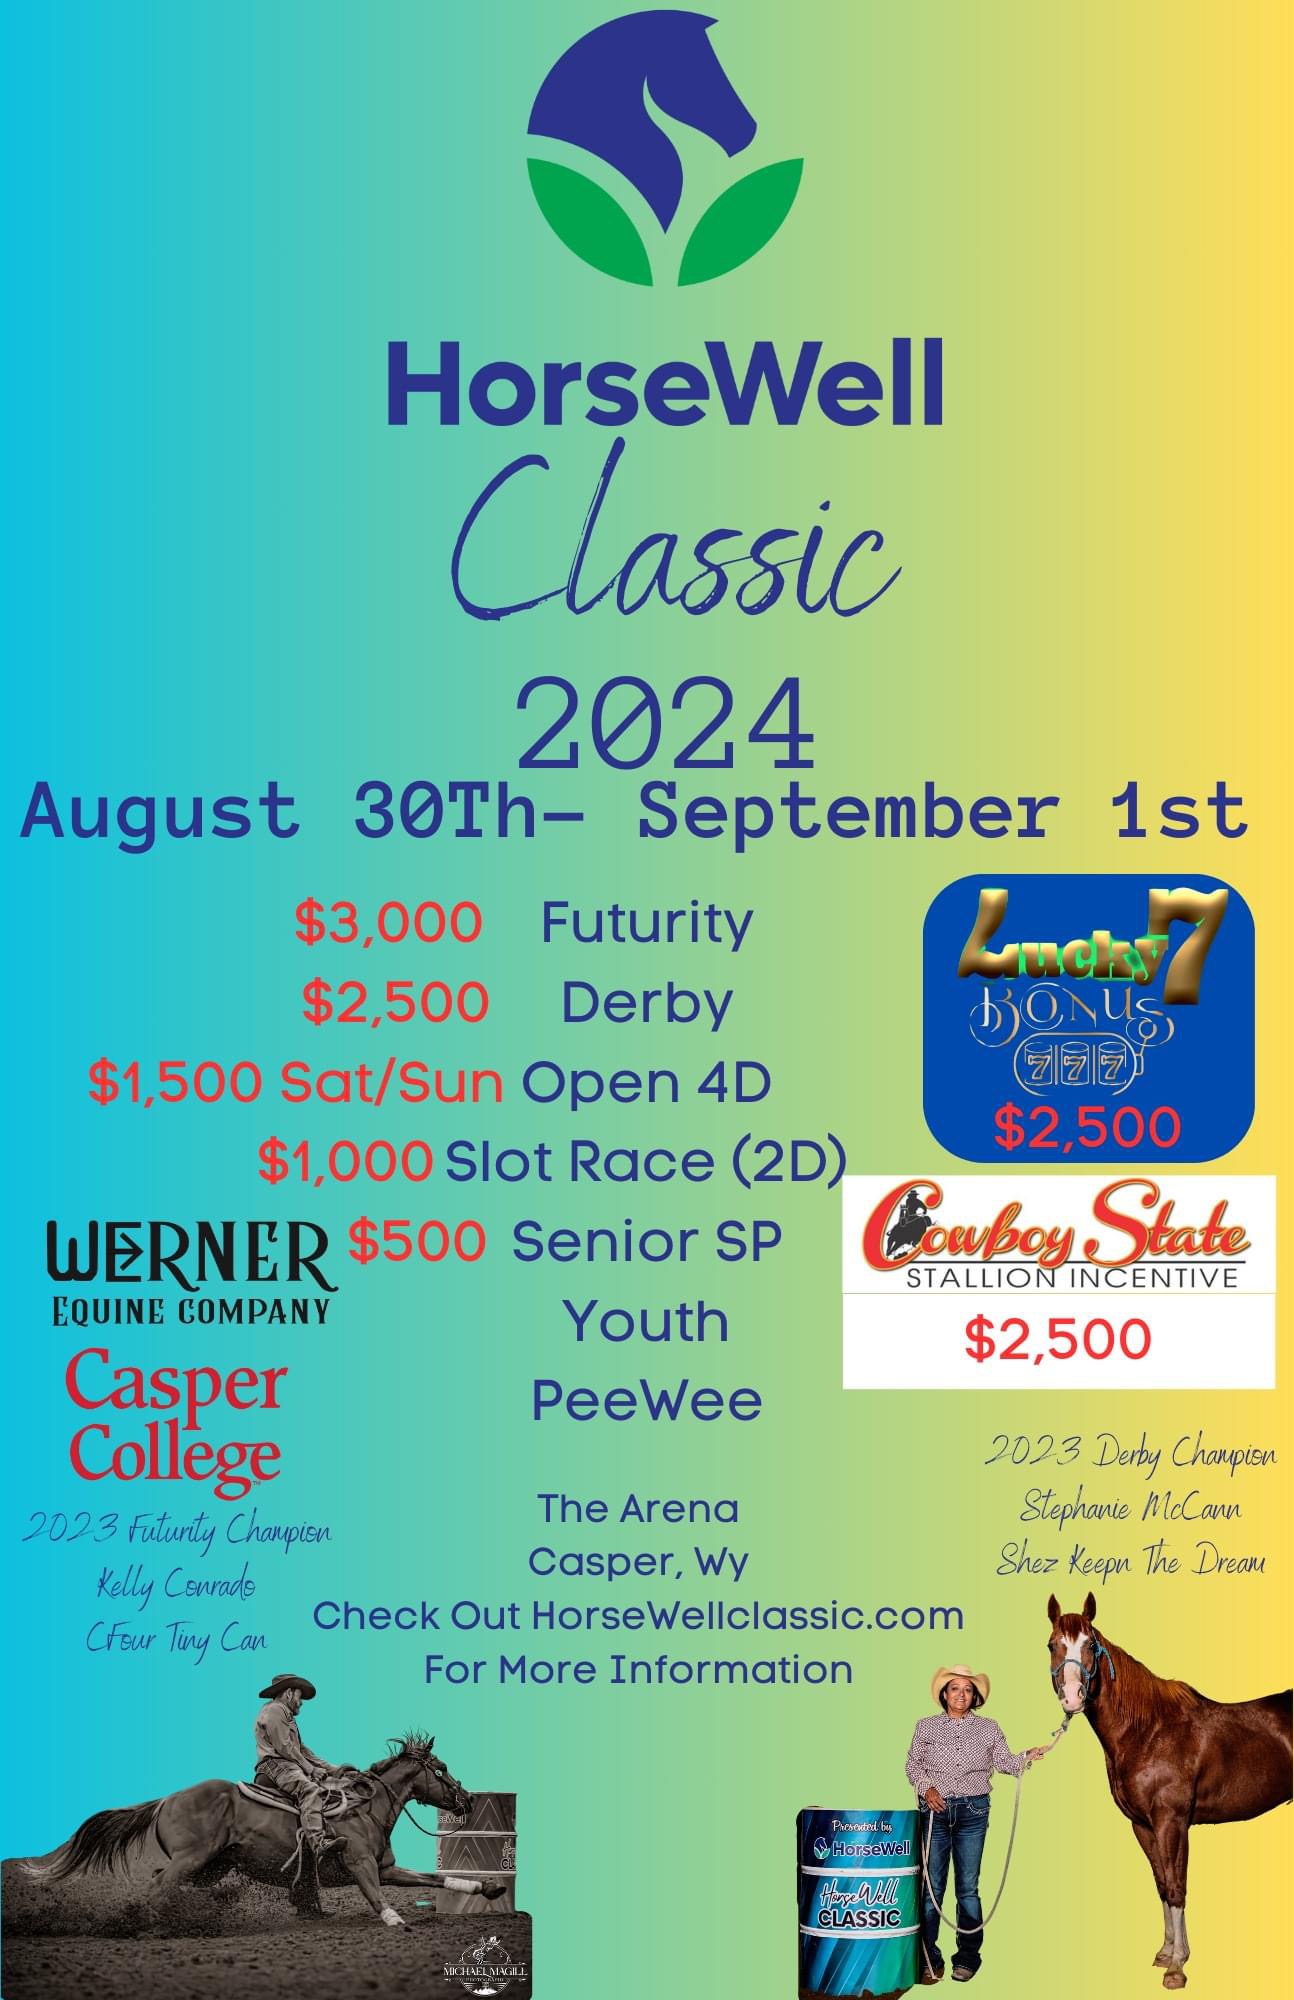 HorseWell Classic 